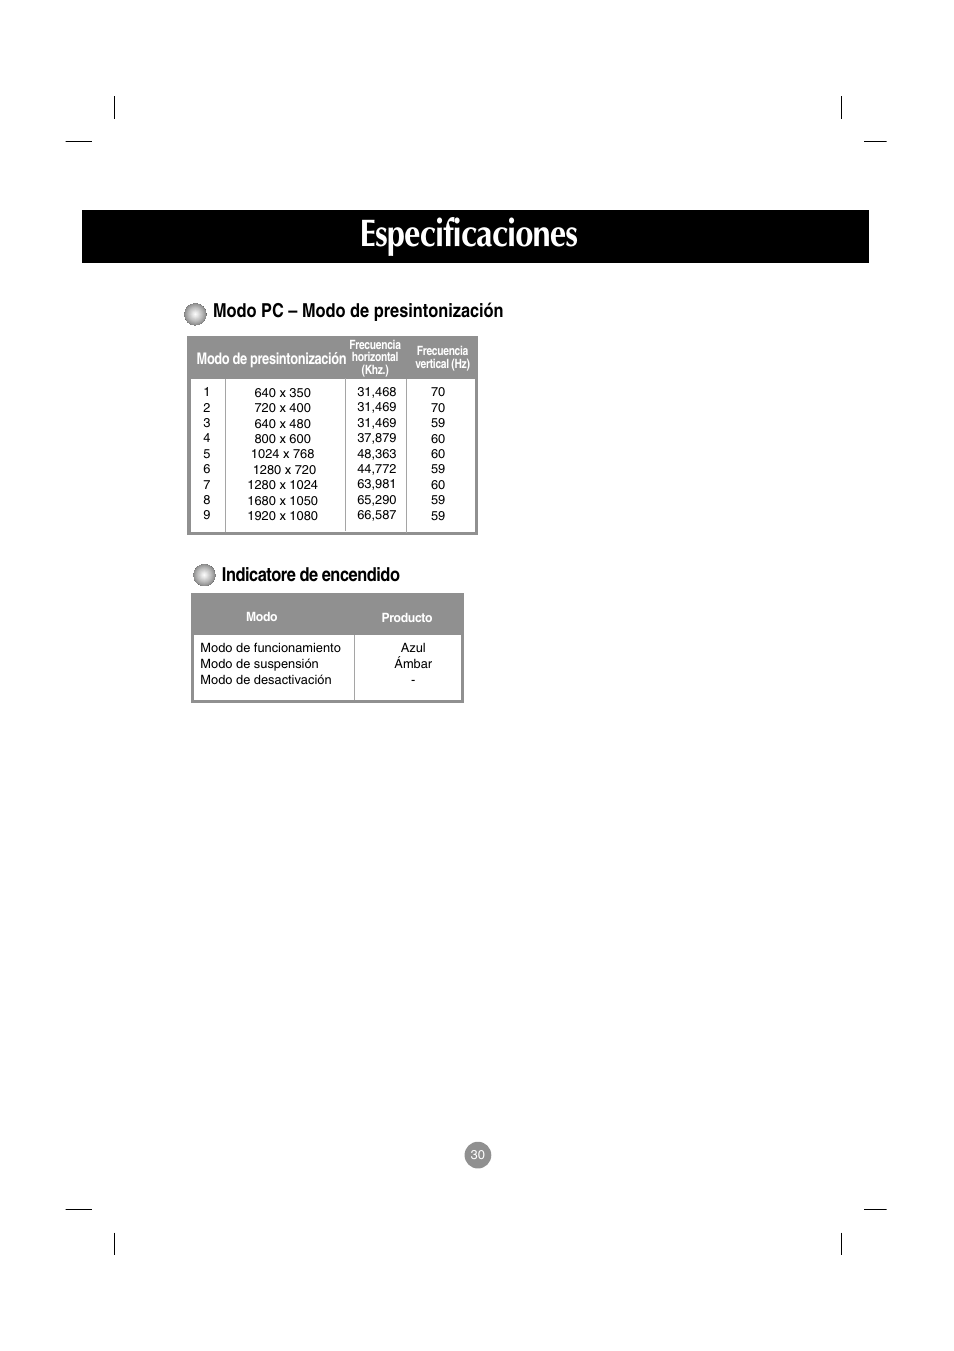 Modo pc – modo de presintonización, Indicatore de encendido, Especificaciones | LG M4210D-B21 Manual del usuario | Página 31 / 50